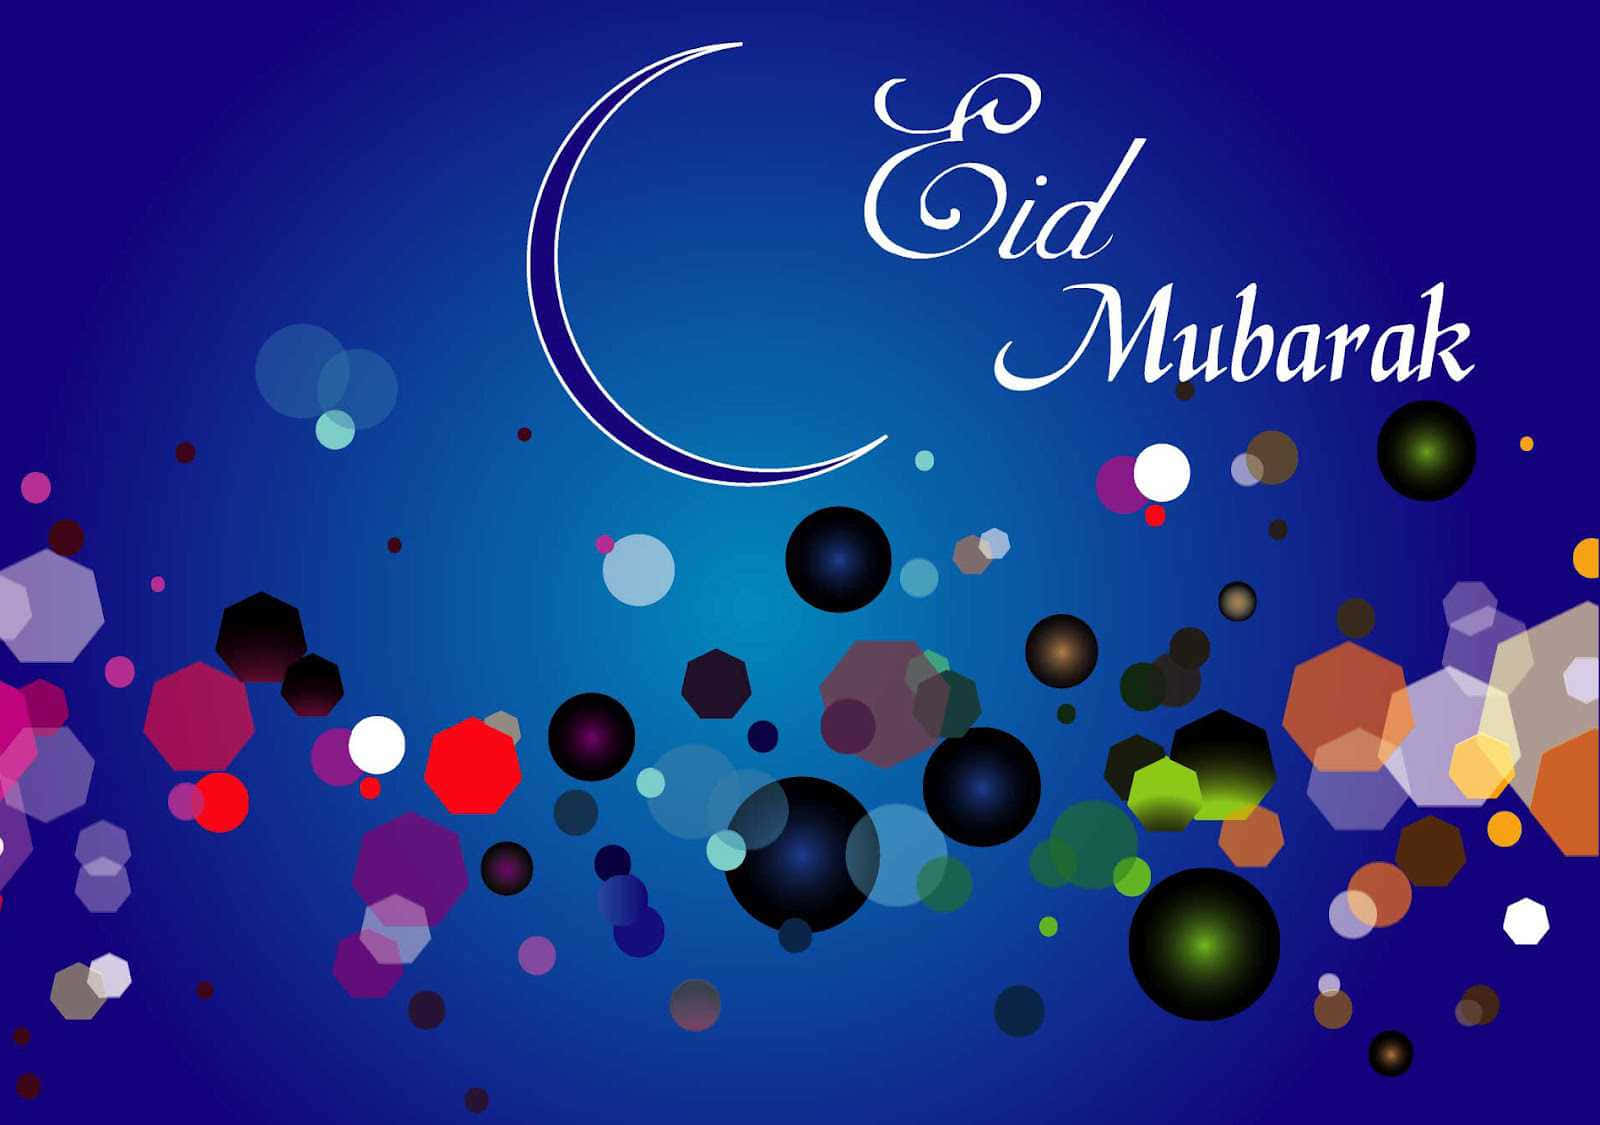 Sfondidi Eid Mubarak, Sfondi Di Eid Mubarak, Sfondi Di Eid Mubarak, E